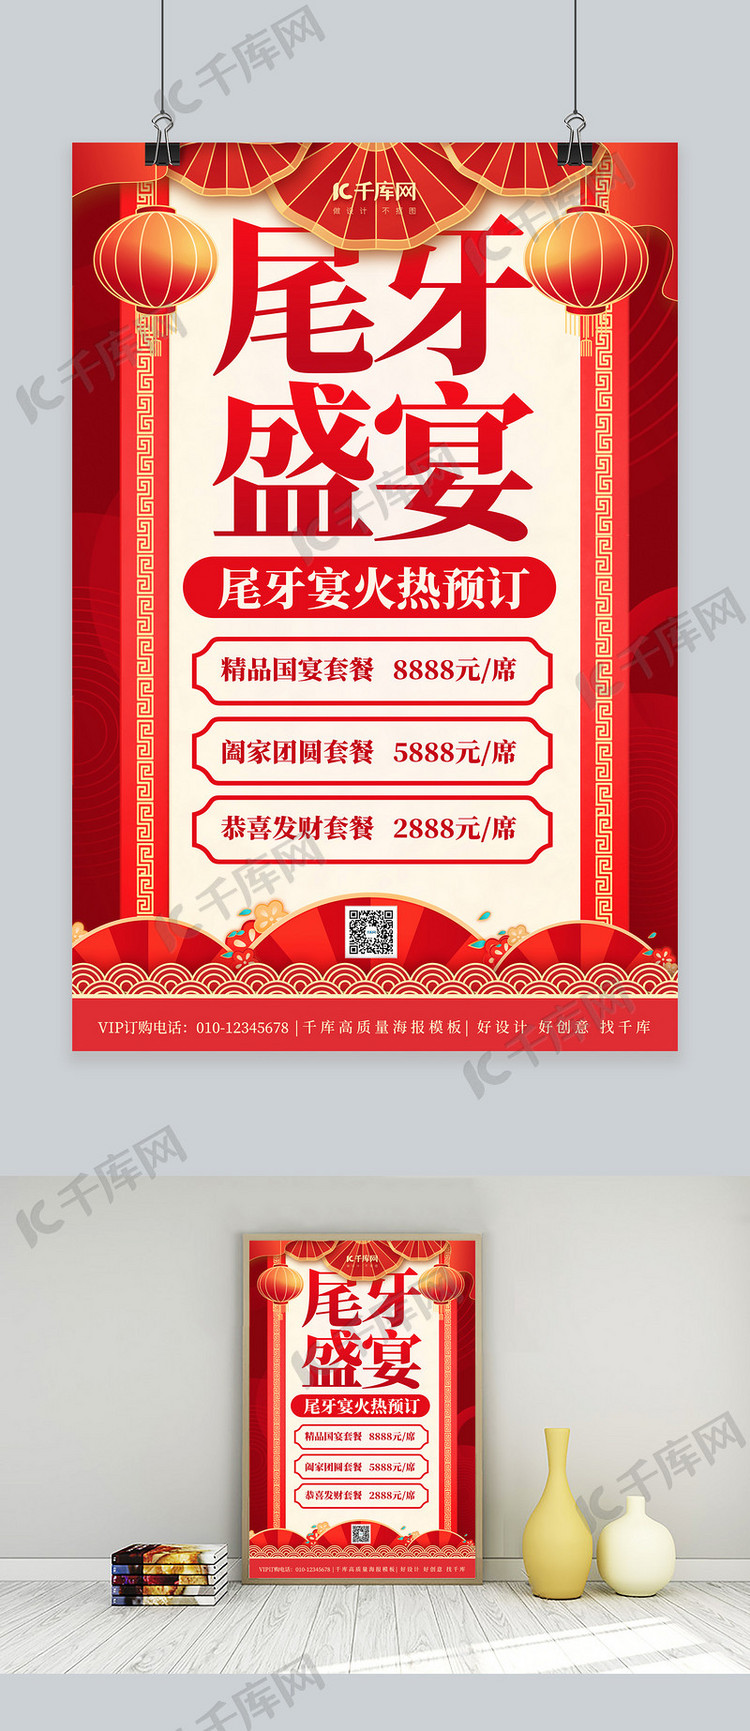 尾牙宴卷轴红色中国风海报